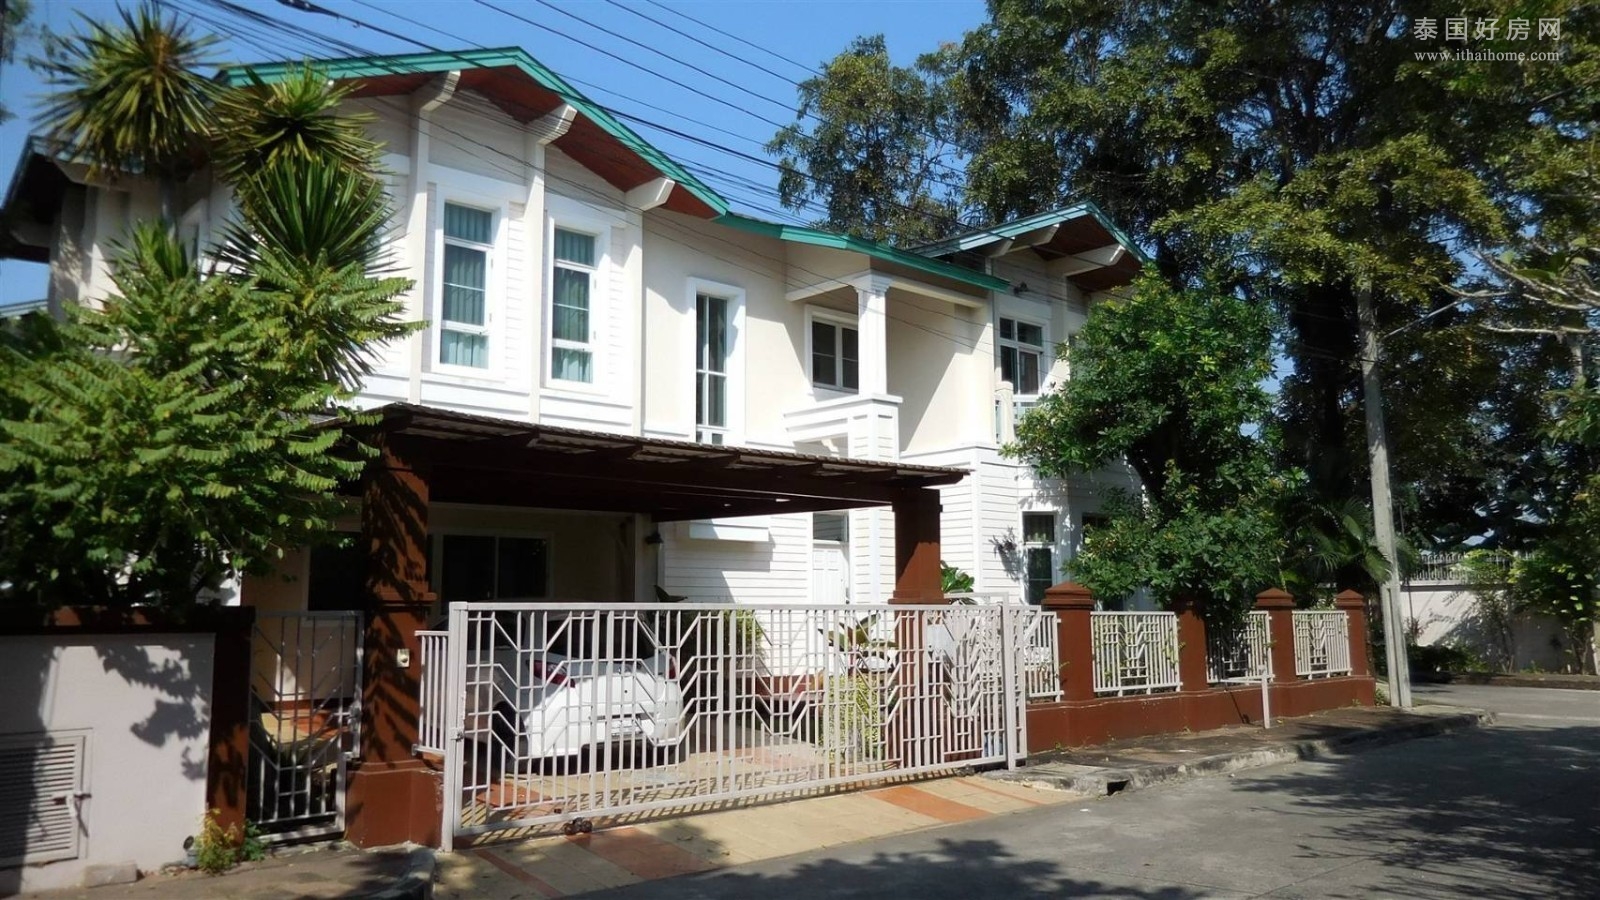 【推荐】RamInthra-Ekkamai 附近独栋别墅出售 5卧360平米 3,100泰铢